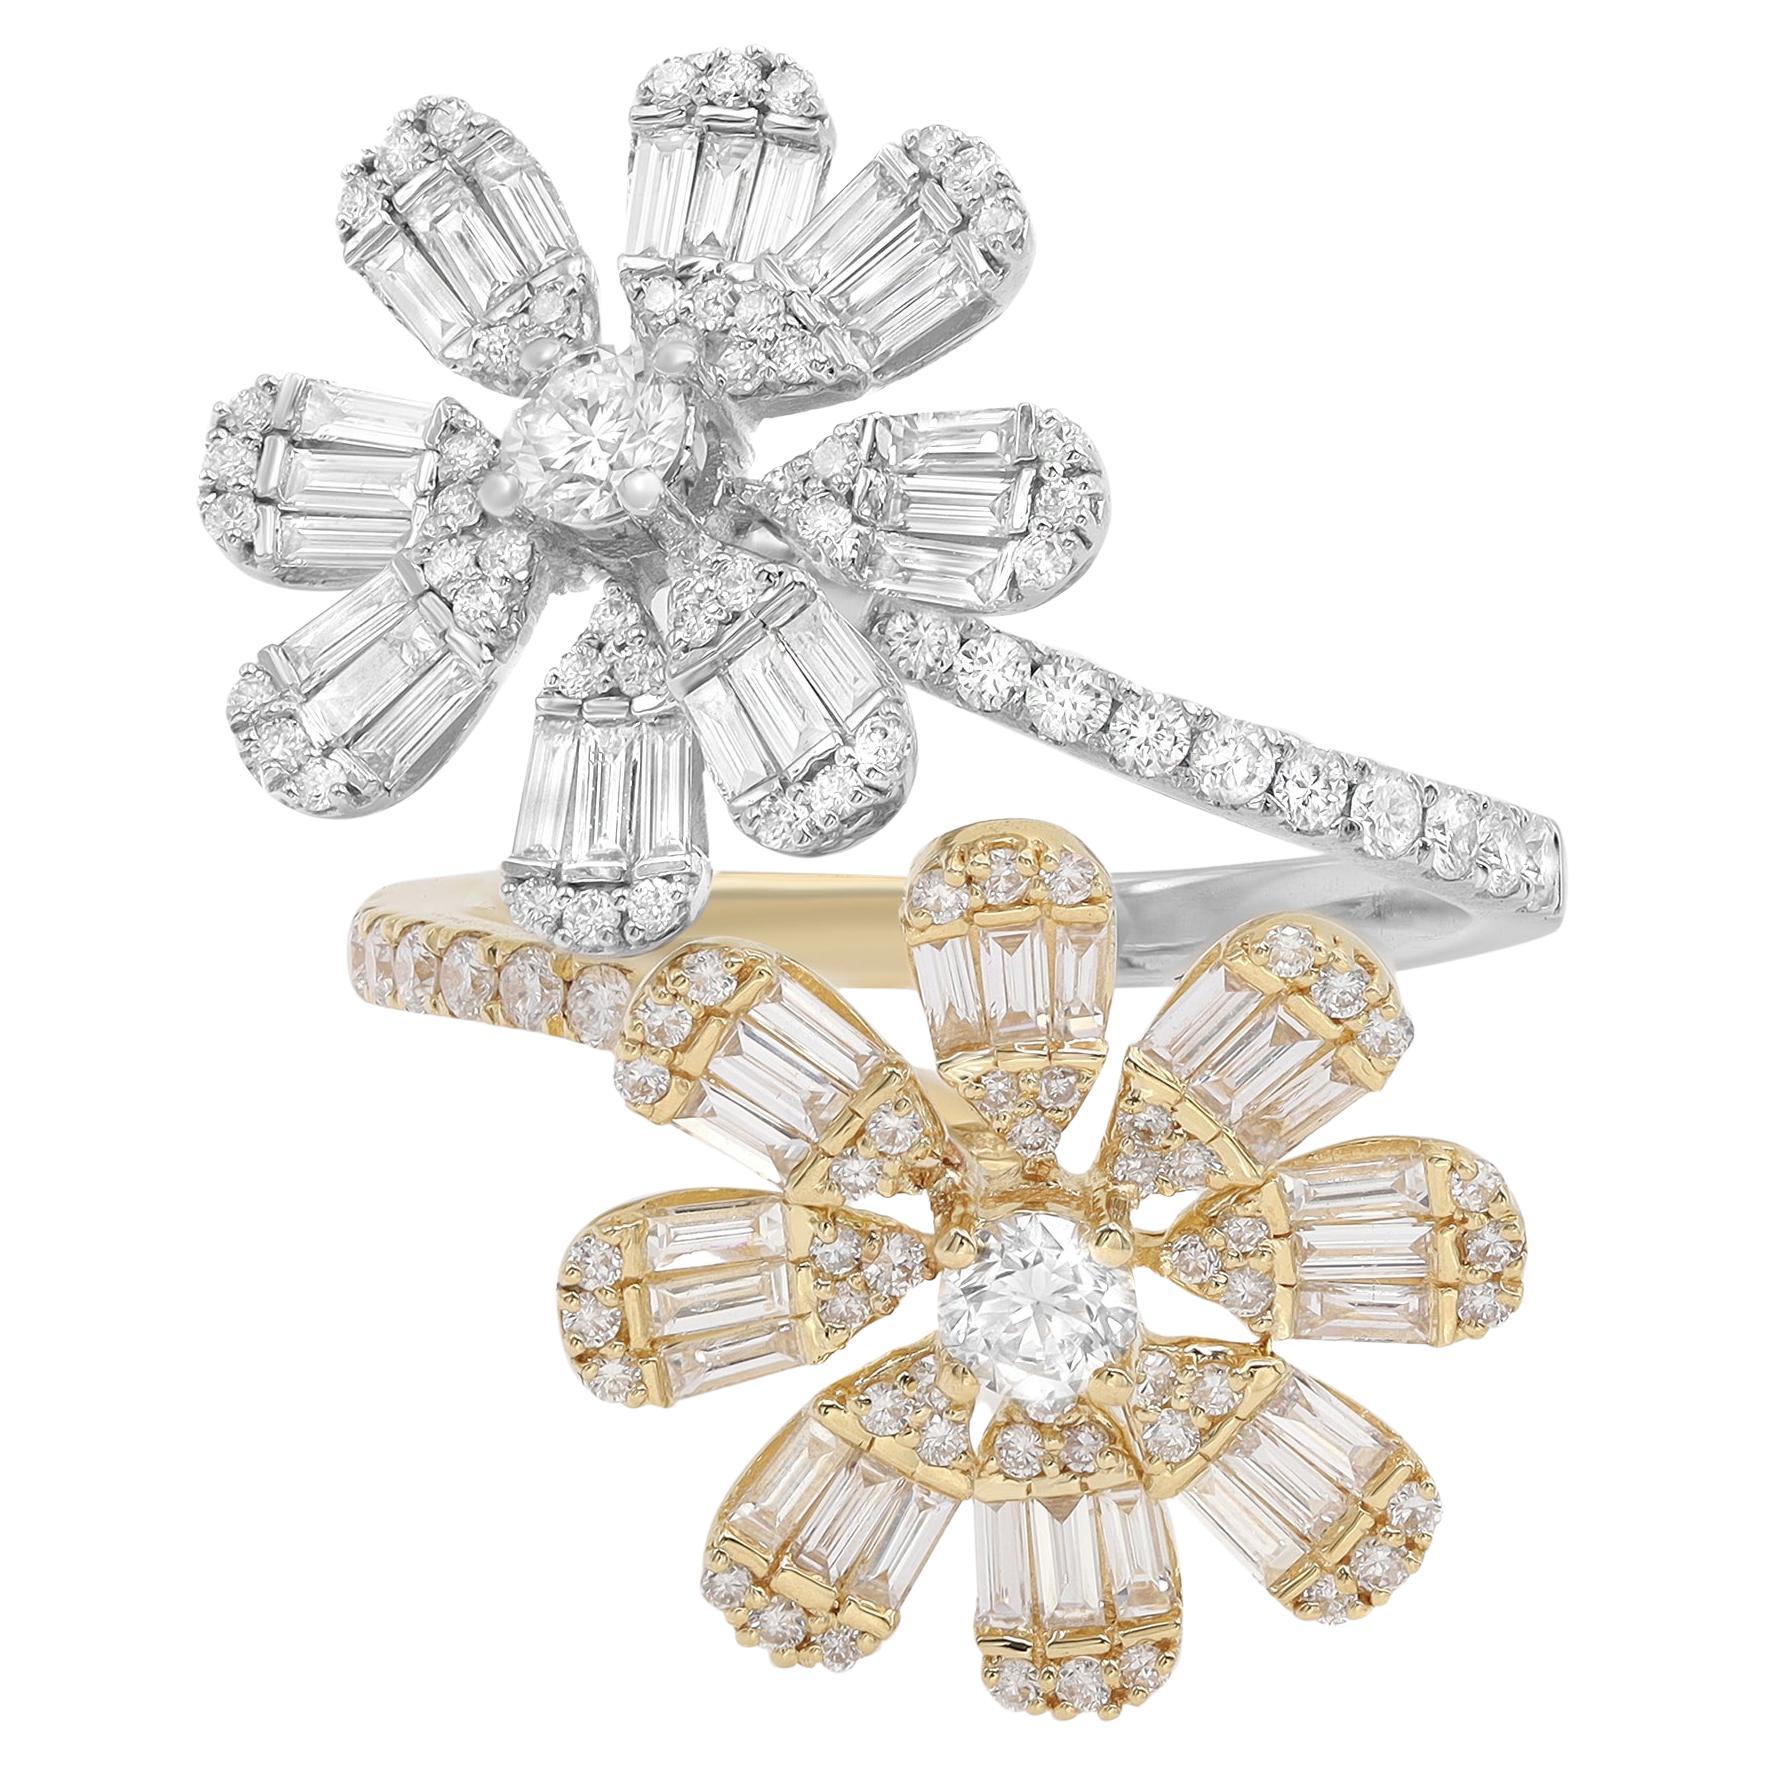 Rachel Koen Diamond Criss Cross Flower Cocktail Ring 18K Gold 1.56cttw For Sale